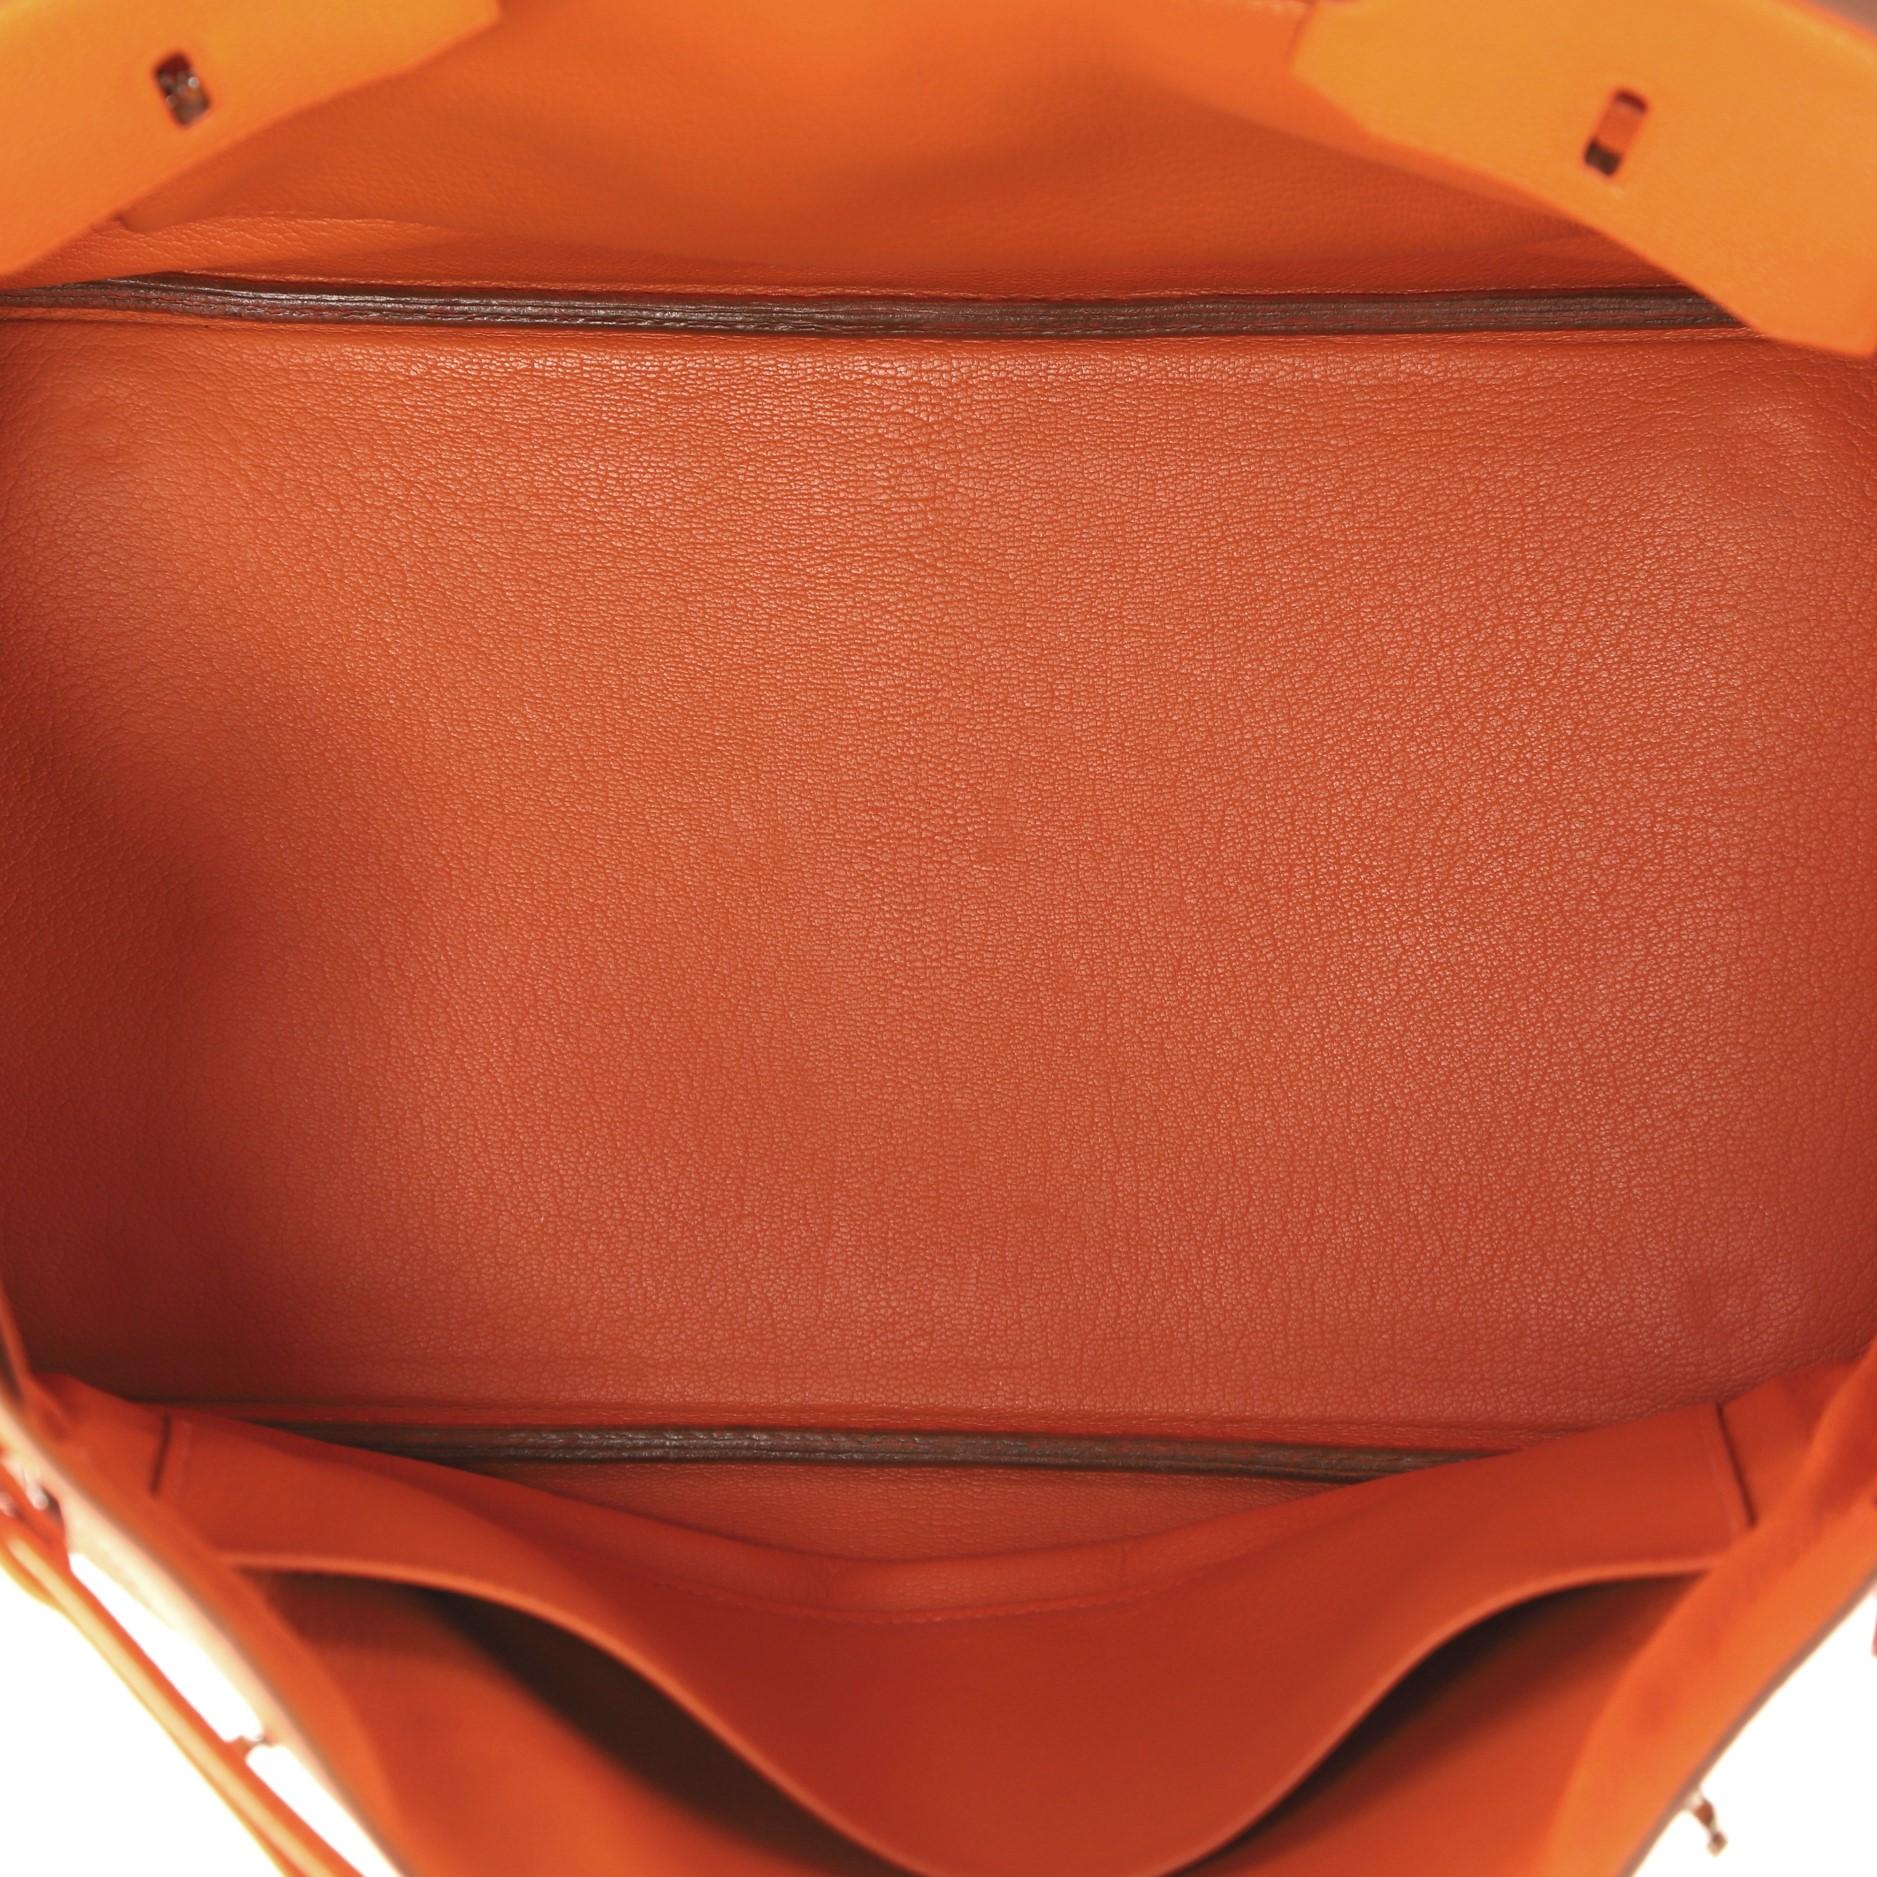 Hermes Birkin Handbag Orange H Togo with Palladium Hardware 35 10